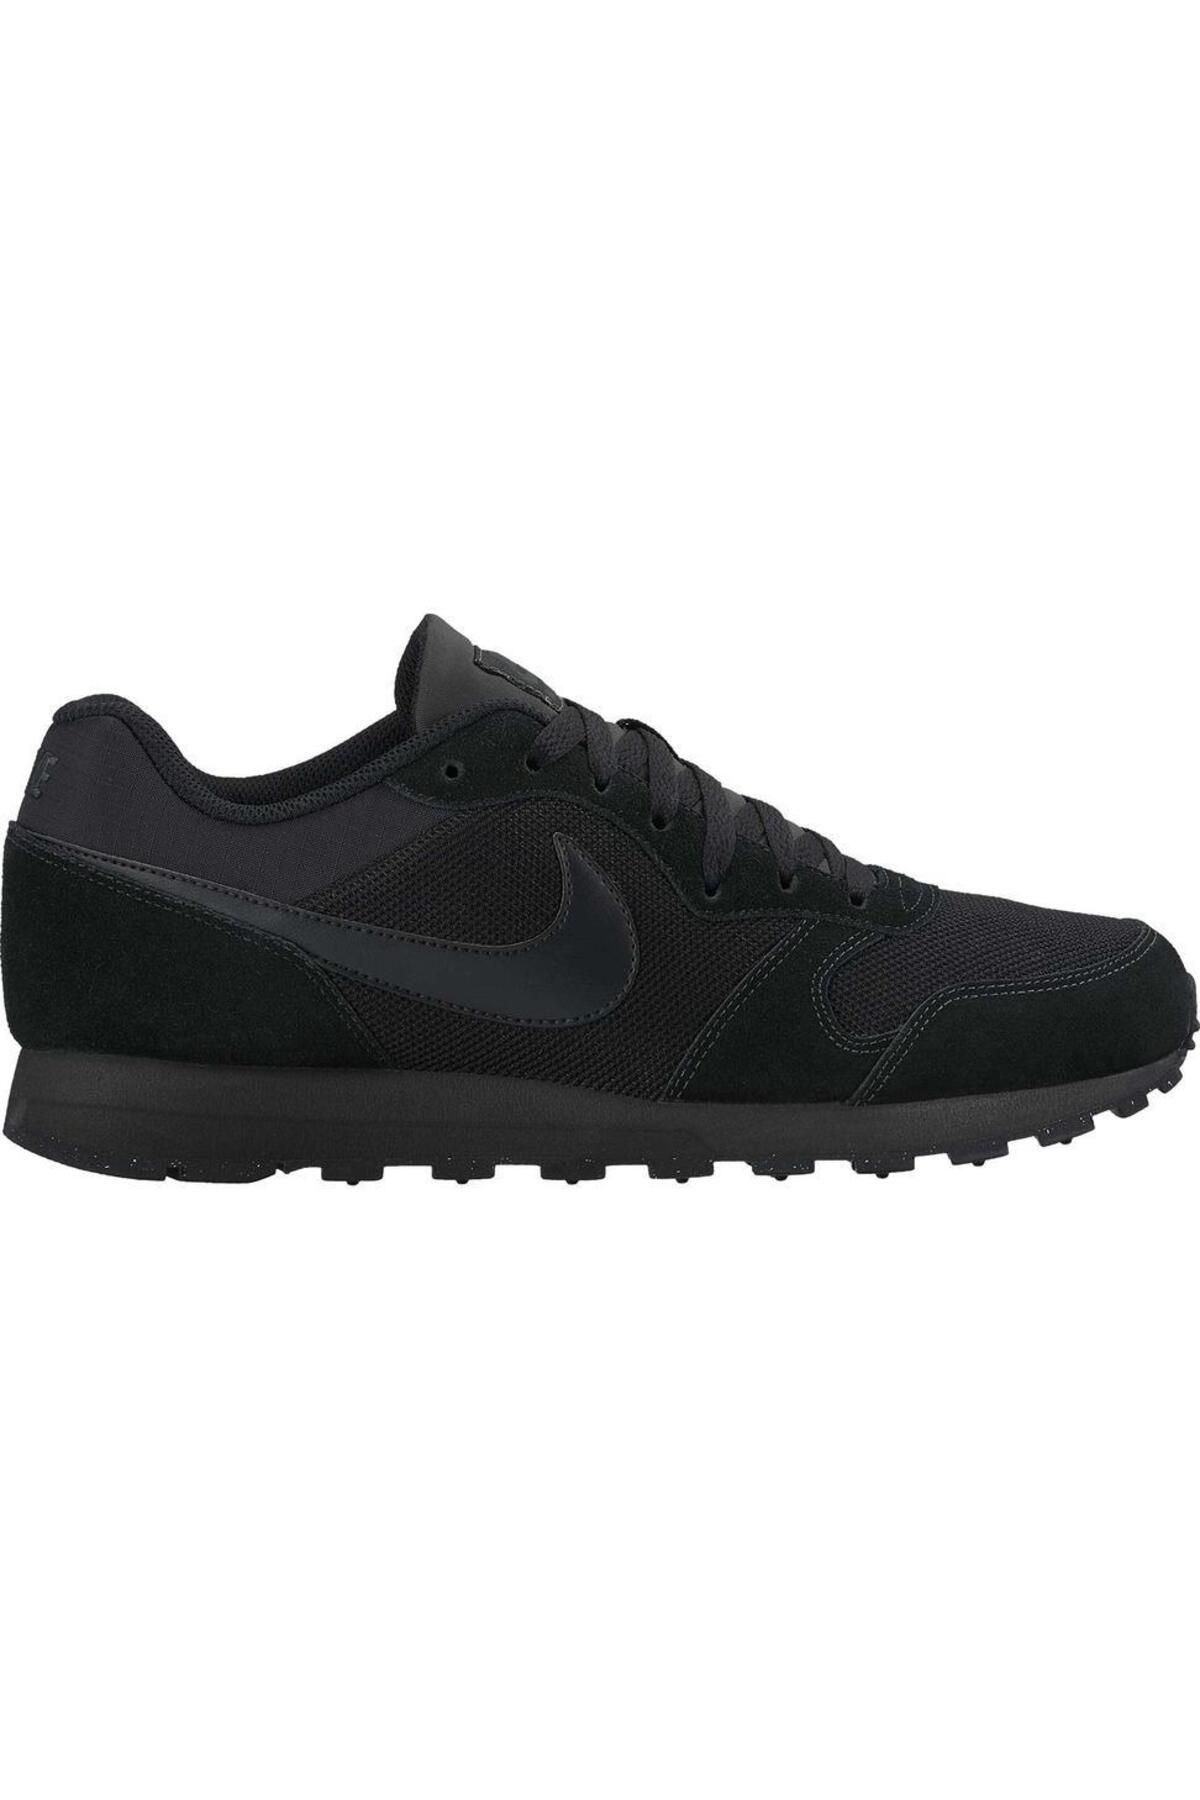 Nike NİKE MD RUNNER 2 Erkek Siyah Spor Ayakkbı Lifestyle Sneaker Günlük Yürüyüş 749794-002